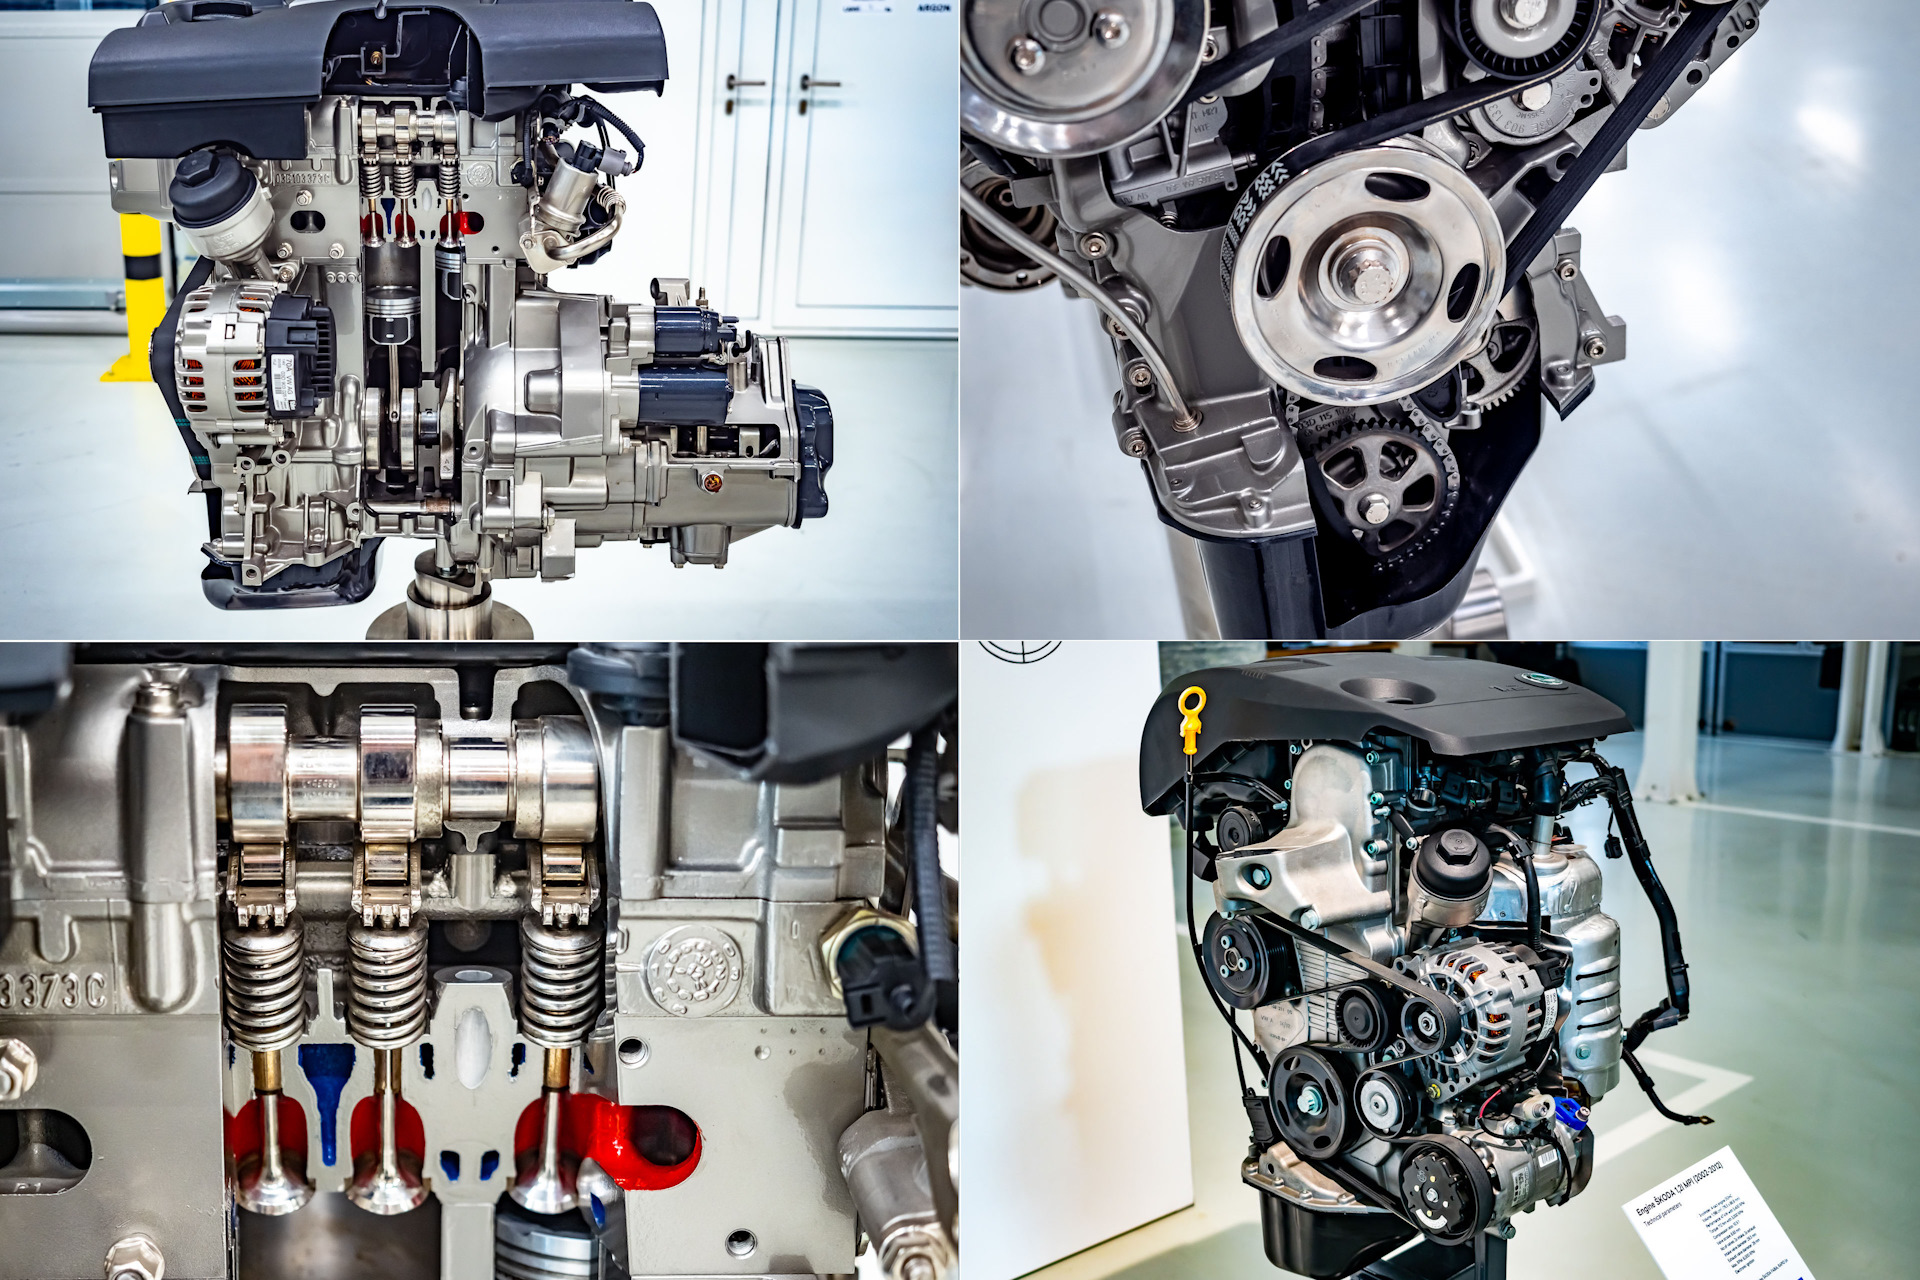 Volkswagen двигатели отзывы. Мотор поло седан 1.6 110 л.с. Мотор Рапид 1.6 MPI 110. Ea211 двигатель Volkswagen. ДВС поло седан 1.6 110.